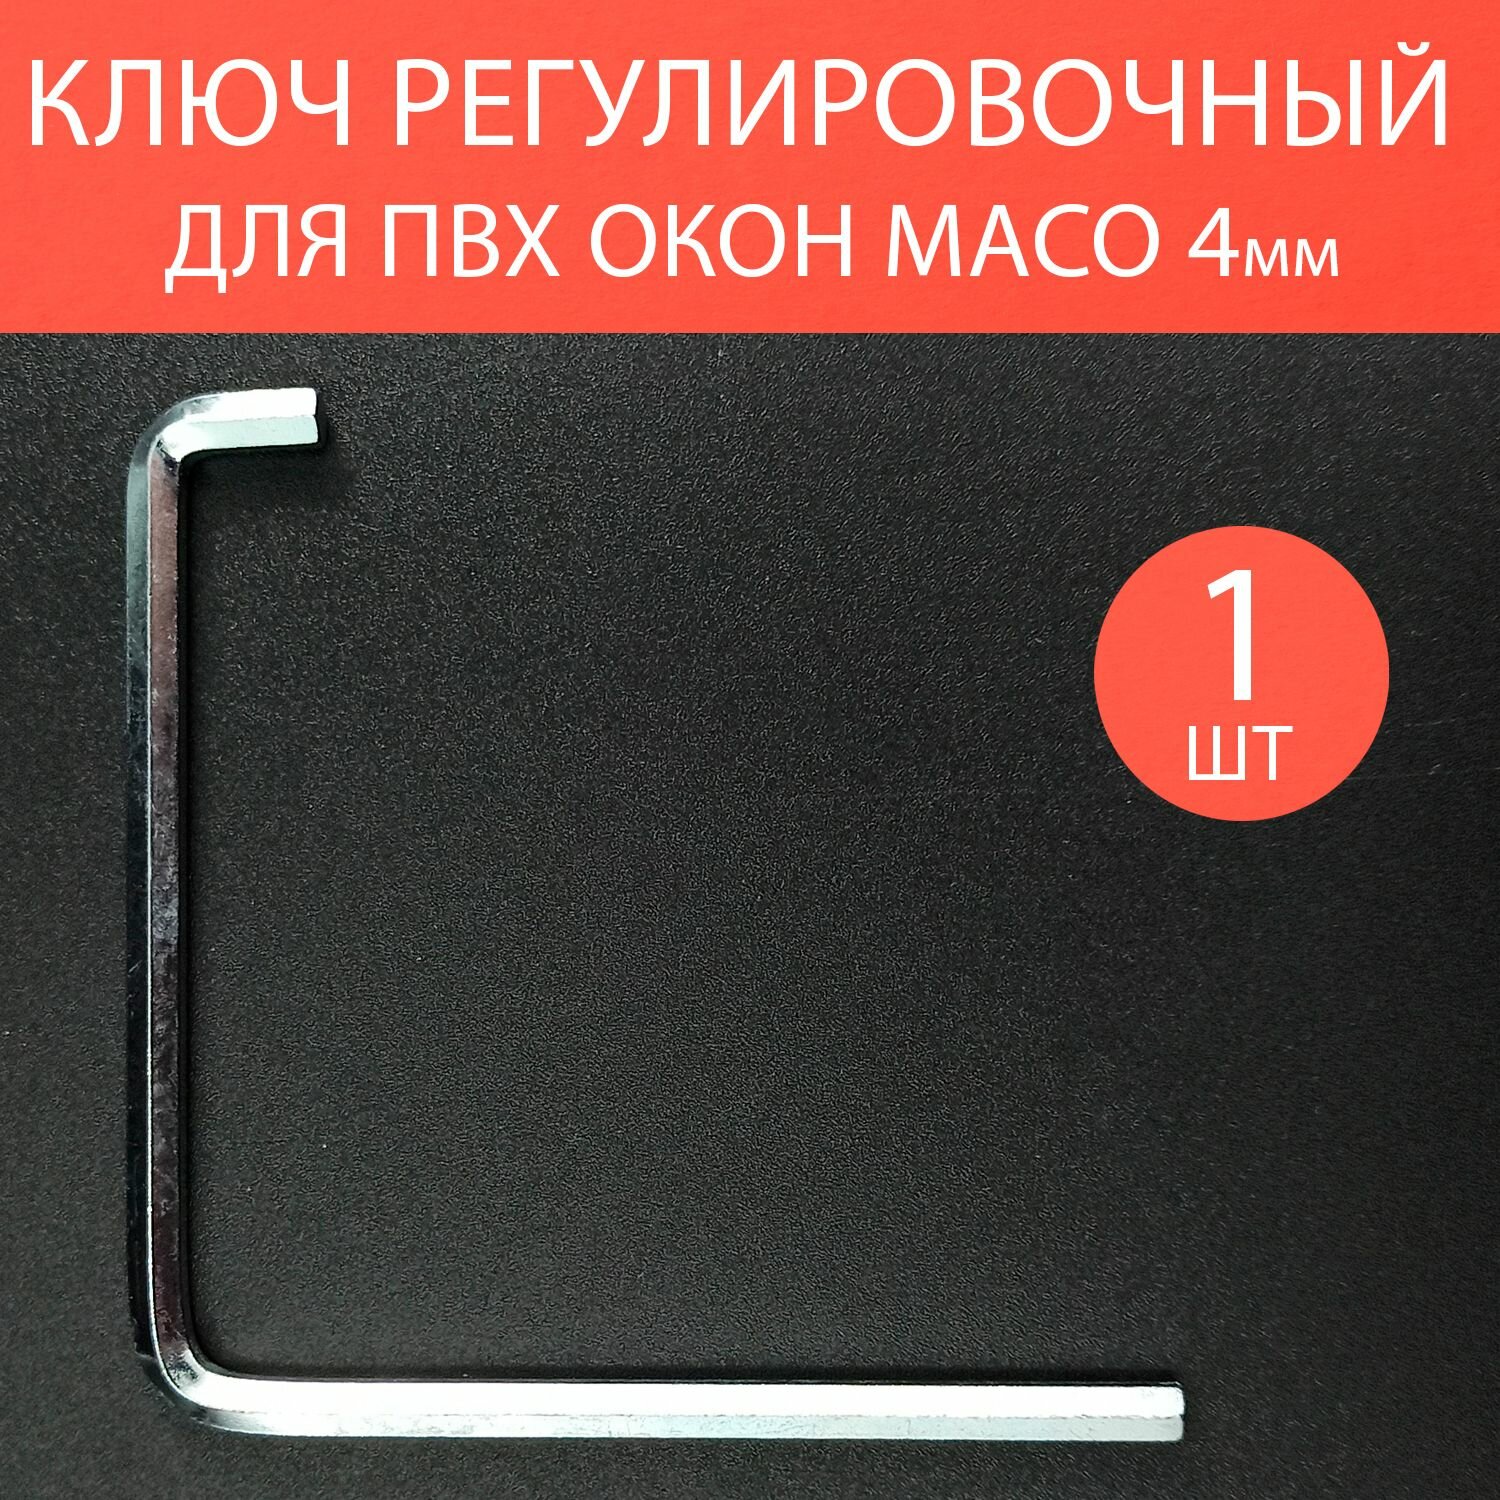 Ключ регулировочный для пластиковых окон шестигранный Maco 4мм